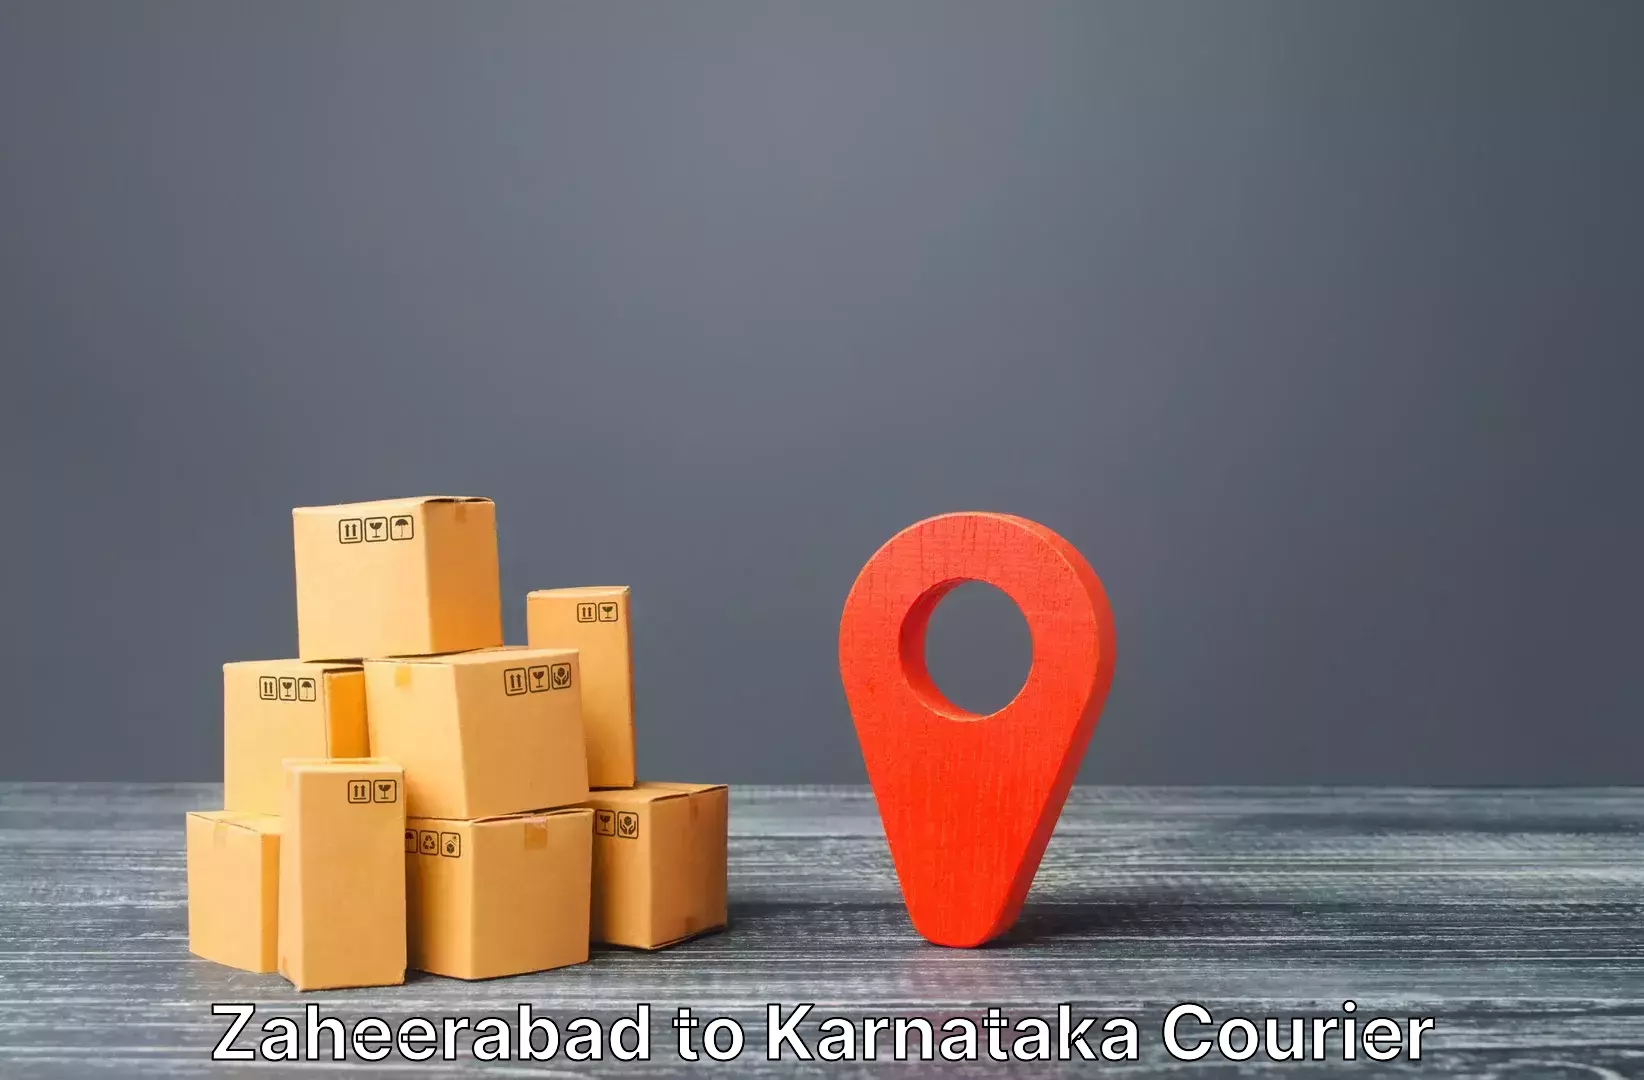 Luggage shipment tracking Zaheerabad to Huliyar